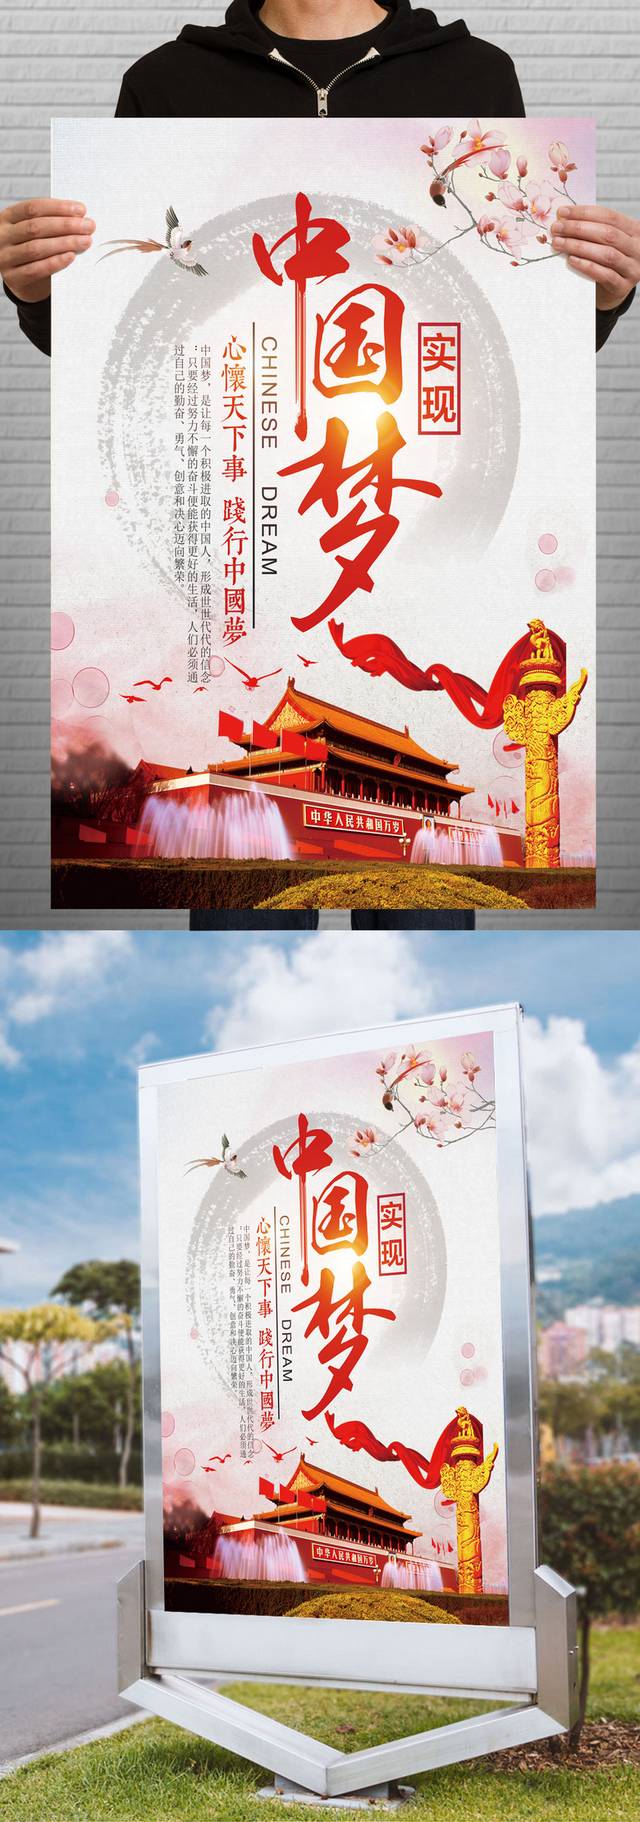 创意中国梦海报